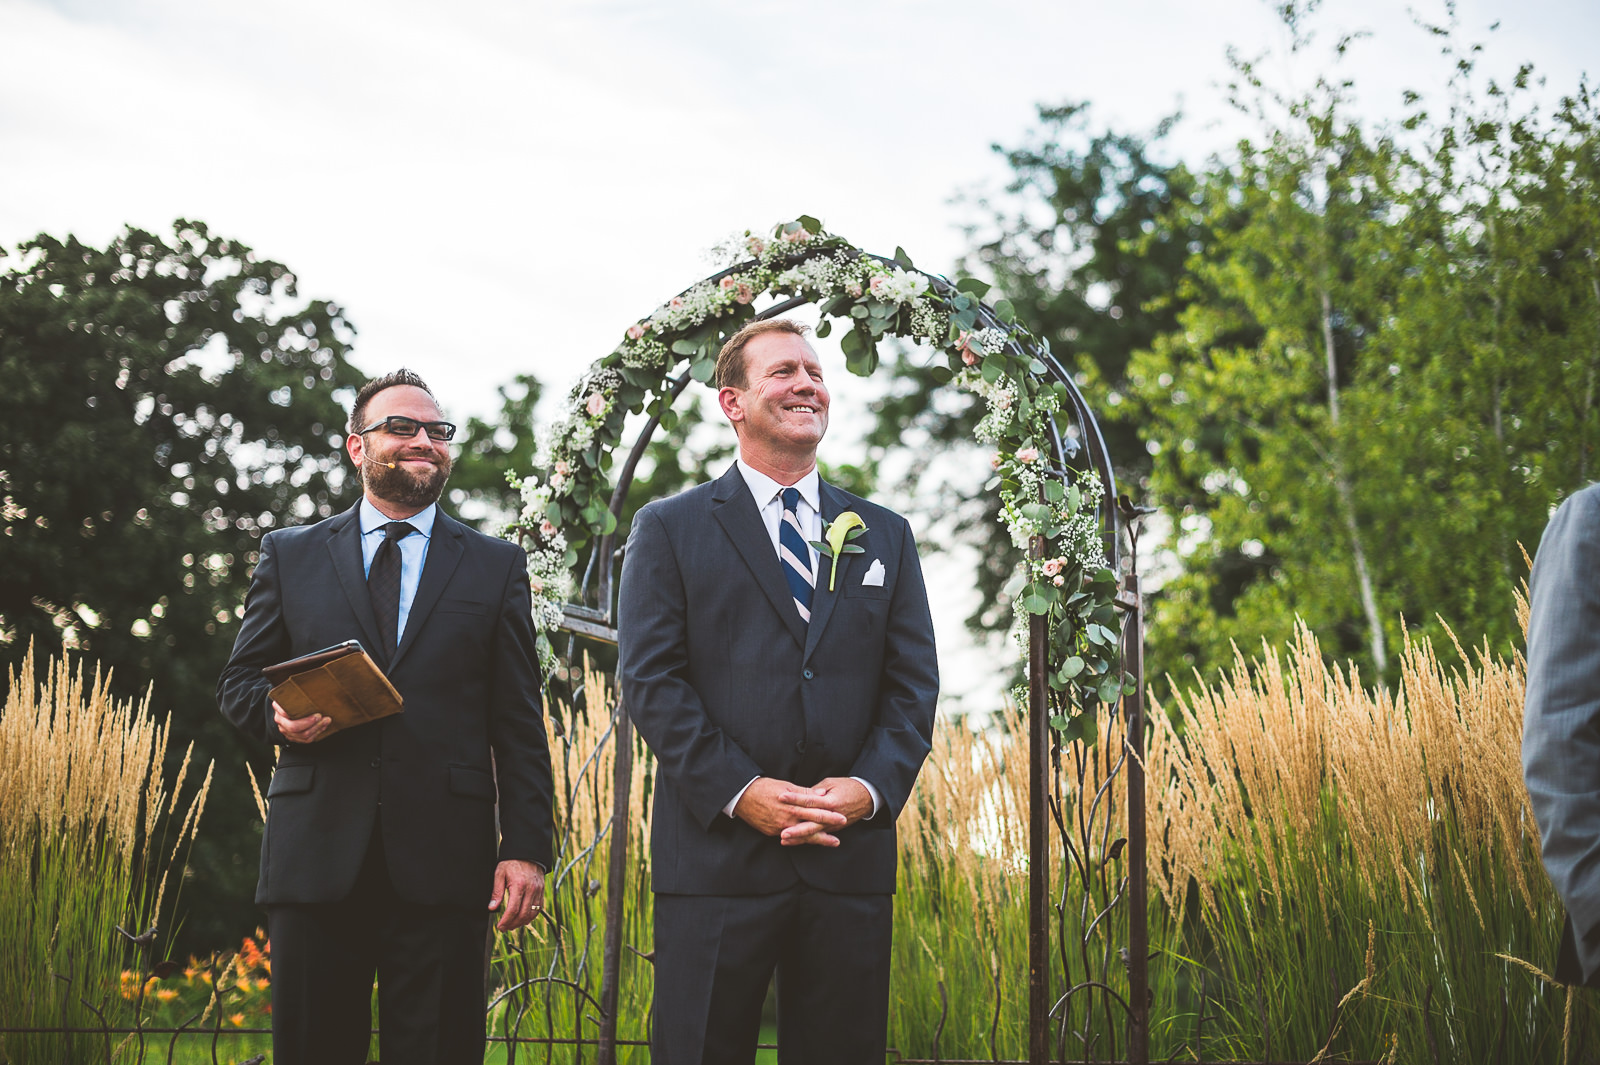 23 groom waiting at alter - Karen + Scott // Fishermens Inn Wedding Photographer Elburn Illinois